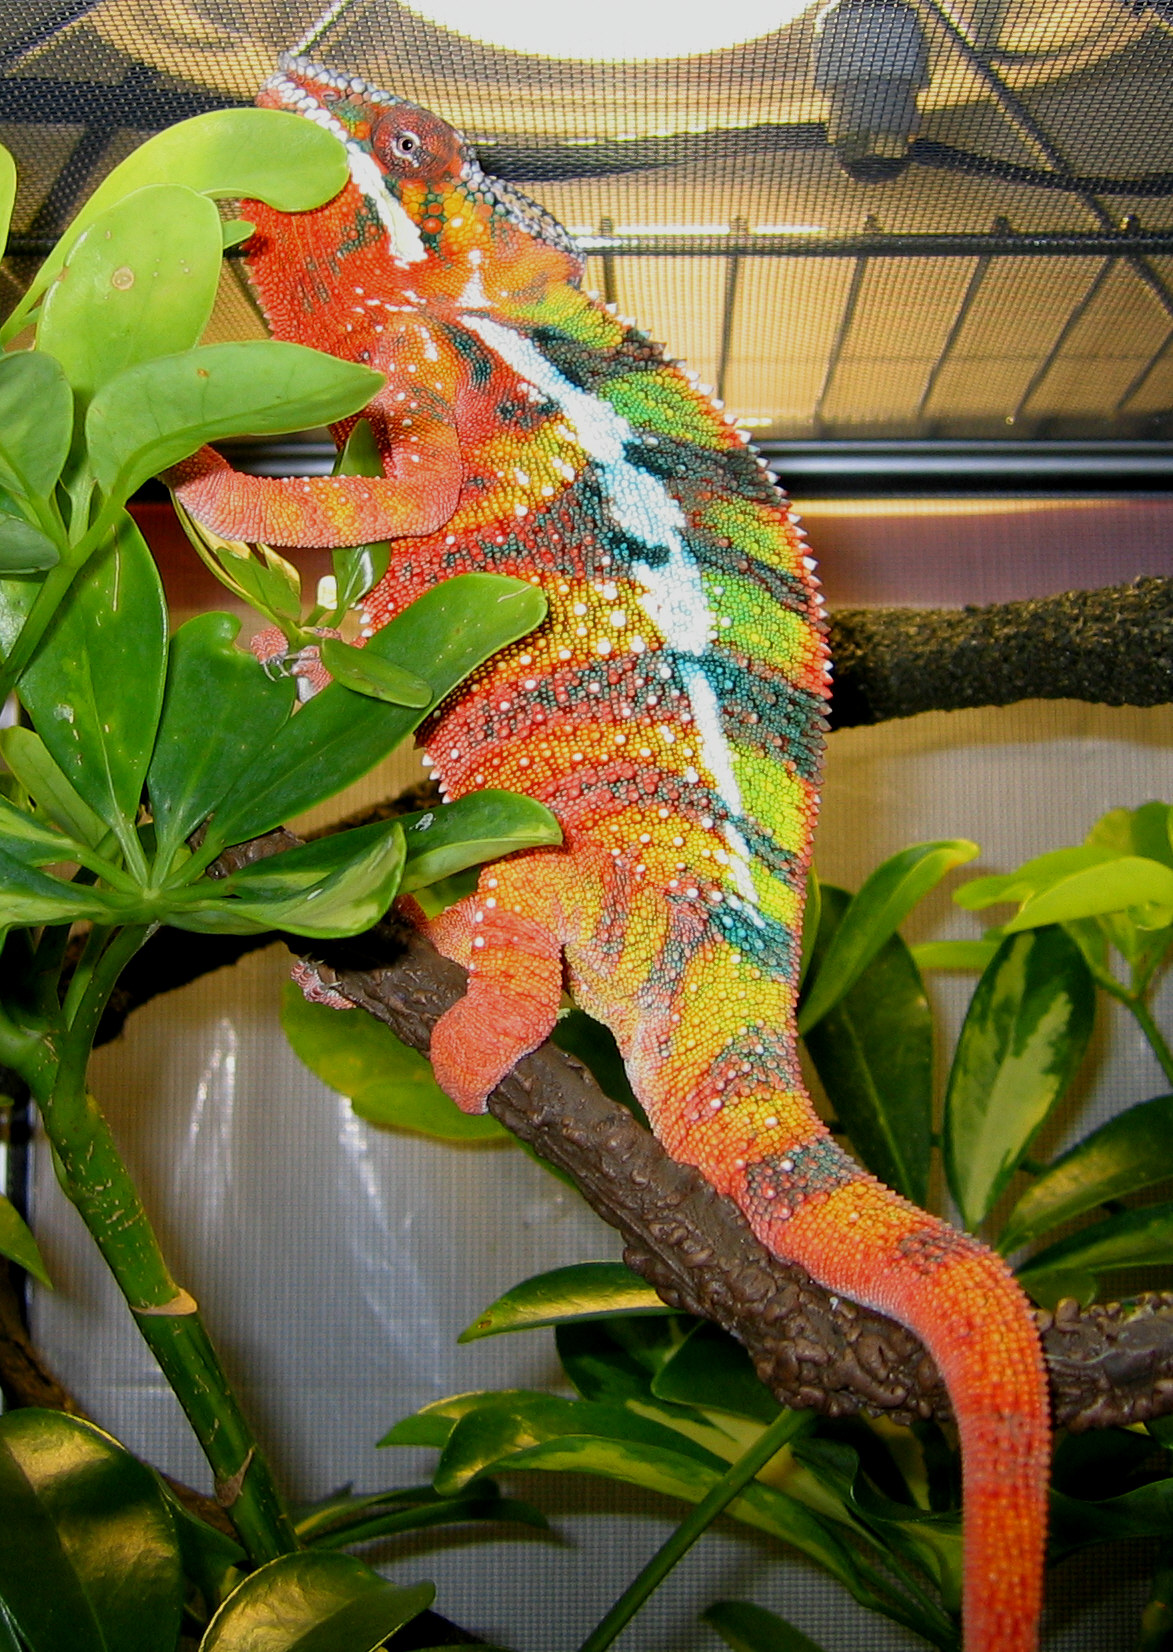 Juan showing color